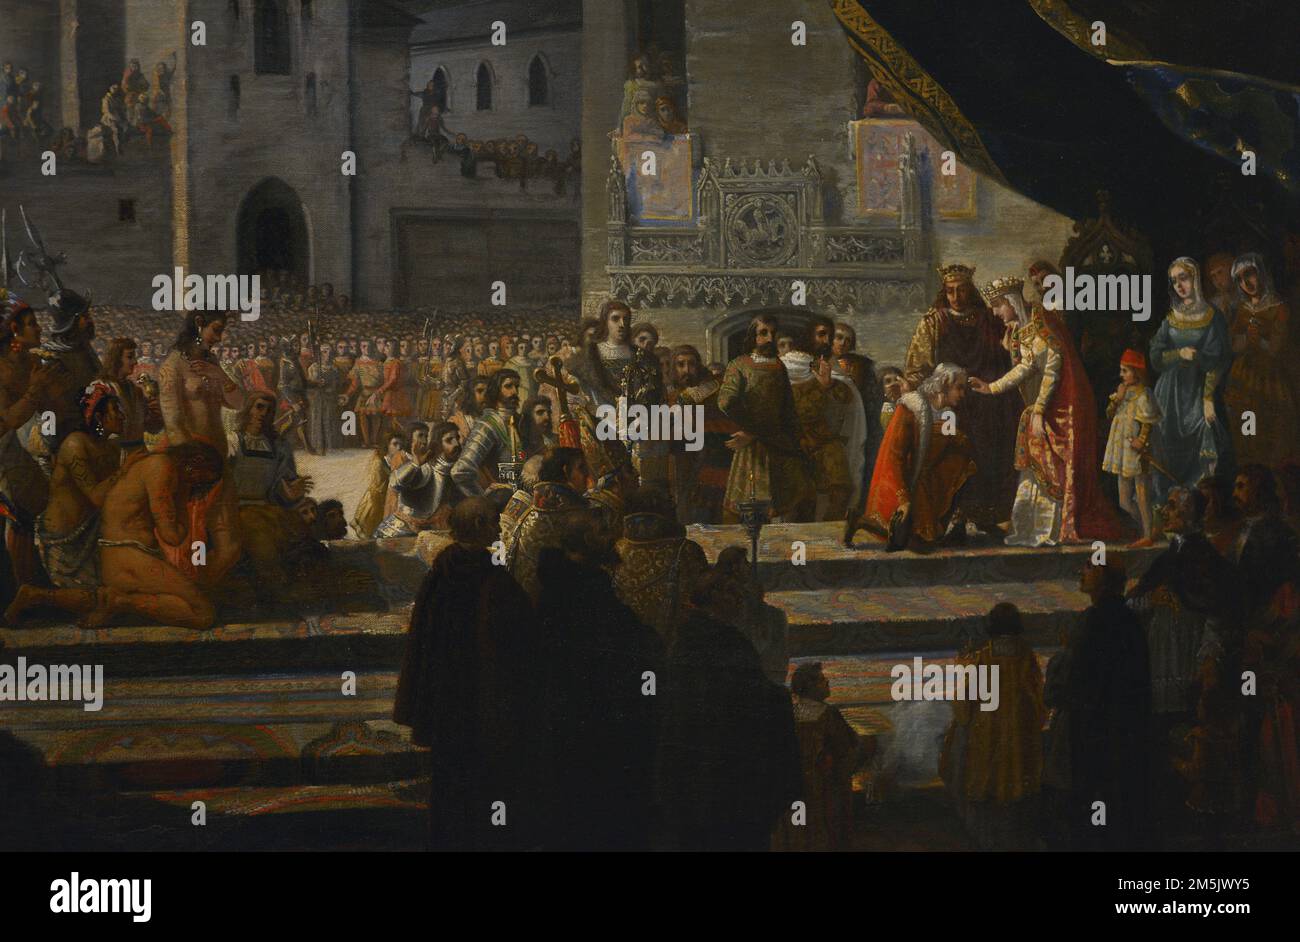 Colombo ricevuto dai monarchi cattolici a Barcellona (aprile 1493). Olio su tela (111 x 144 cm) di Francisco Garcia Ibañez (1825), 1845. Dettaglio. Museo dell'esercito. Toledo, Spagna. (In prestito dal Museo del Prado, Spagna). Foto Stock